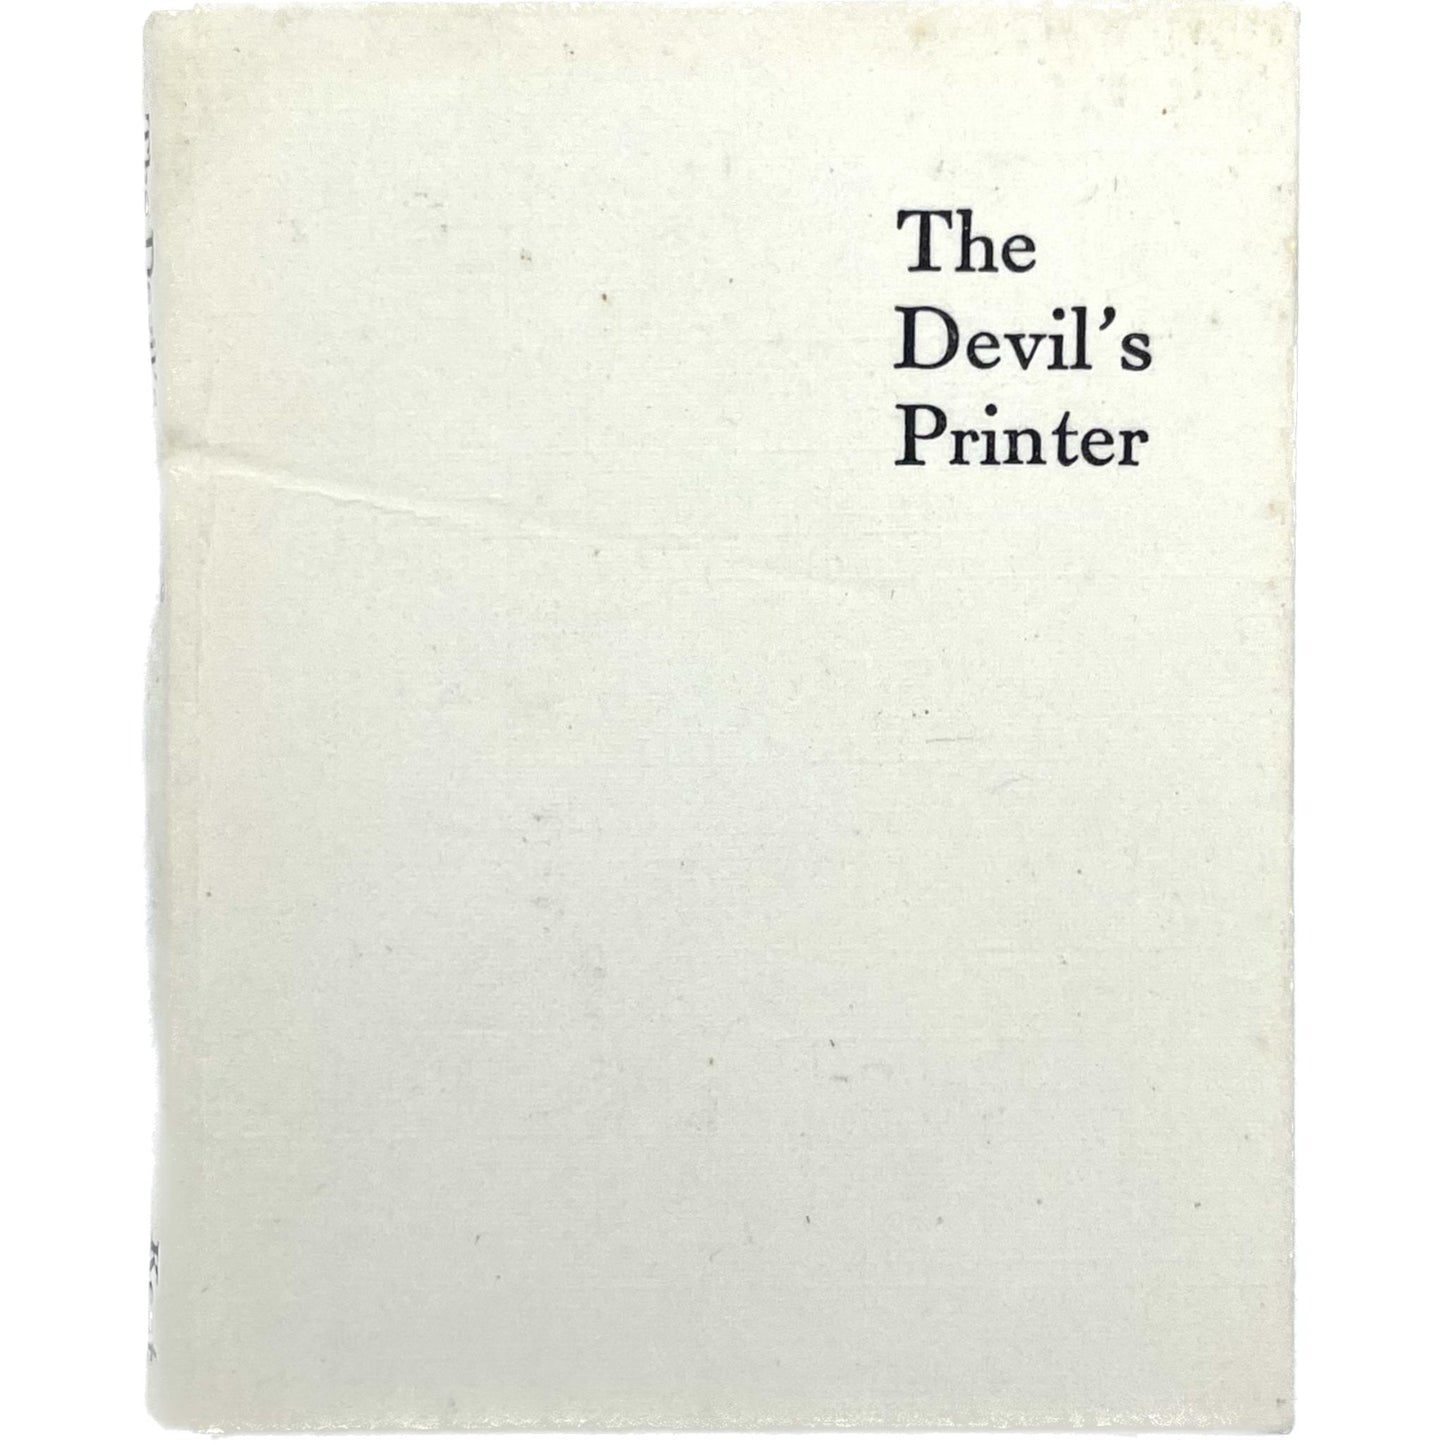 The Devil's Printer